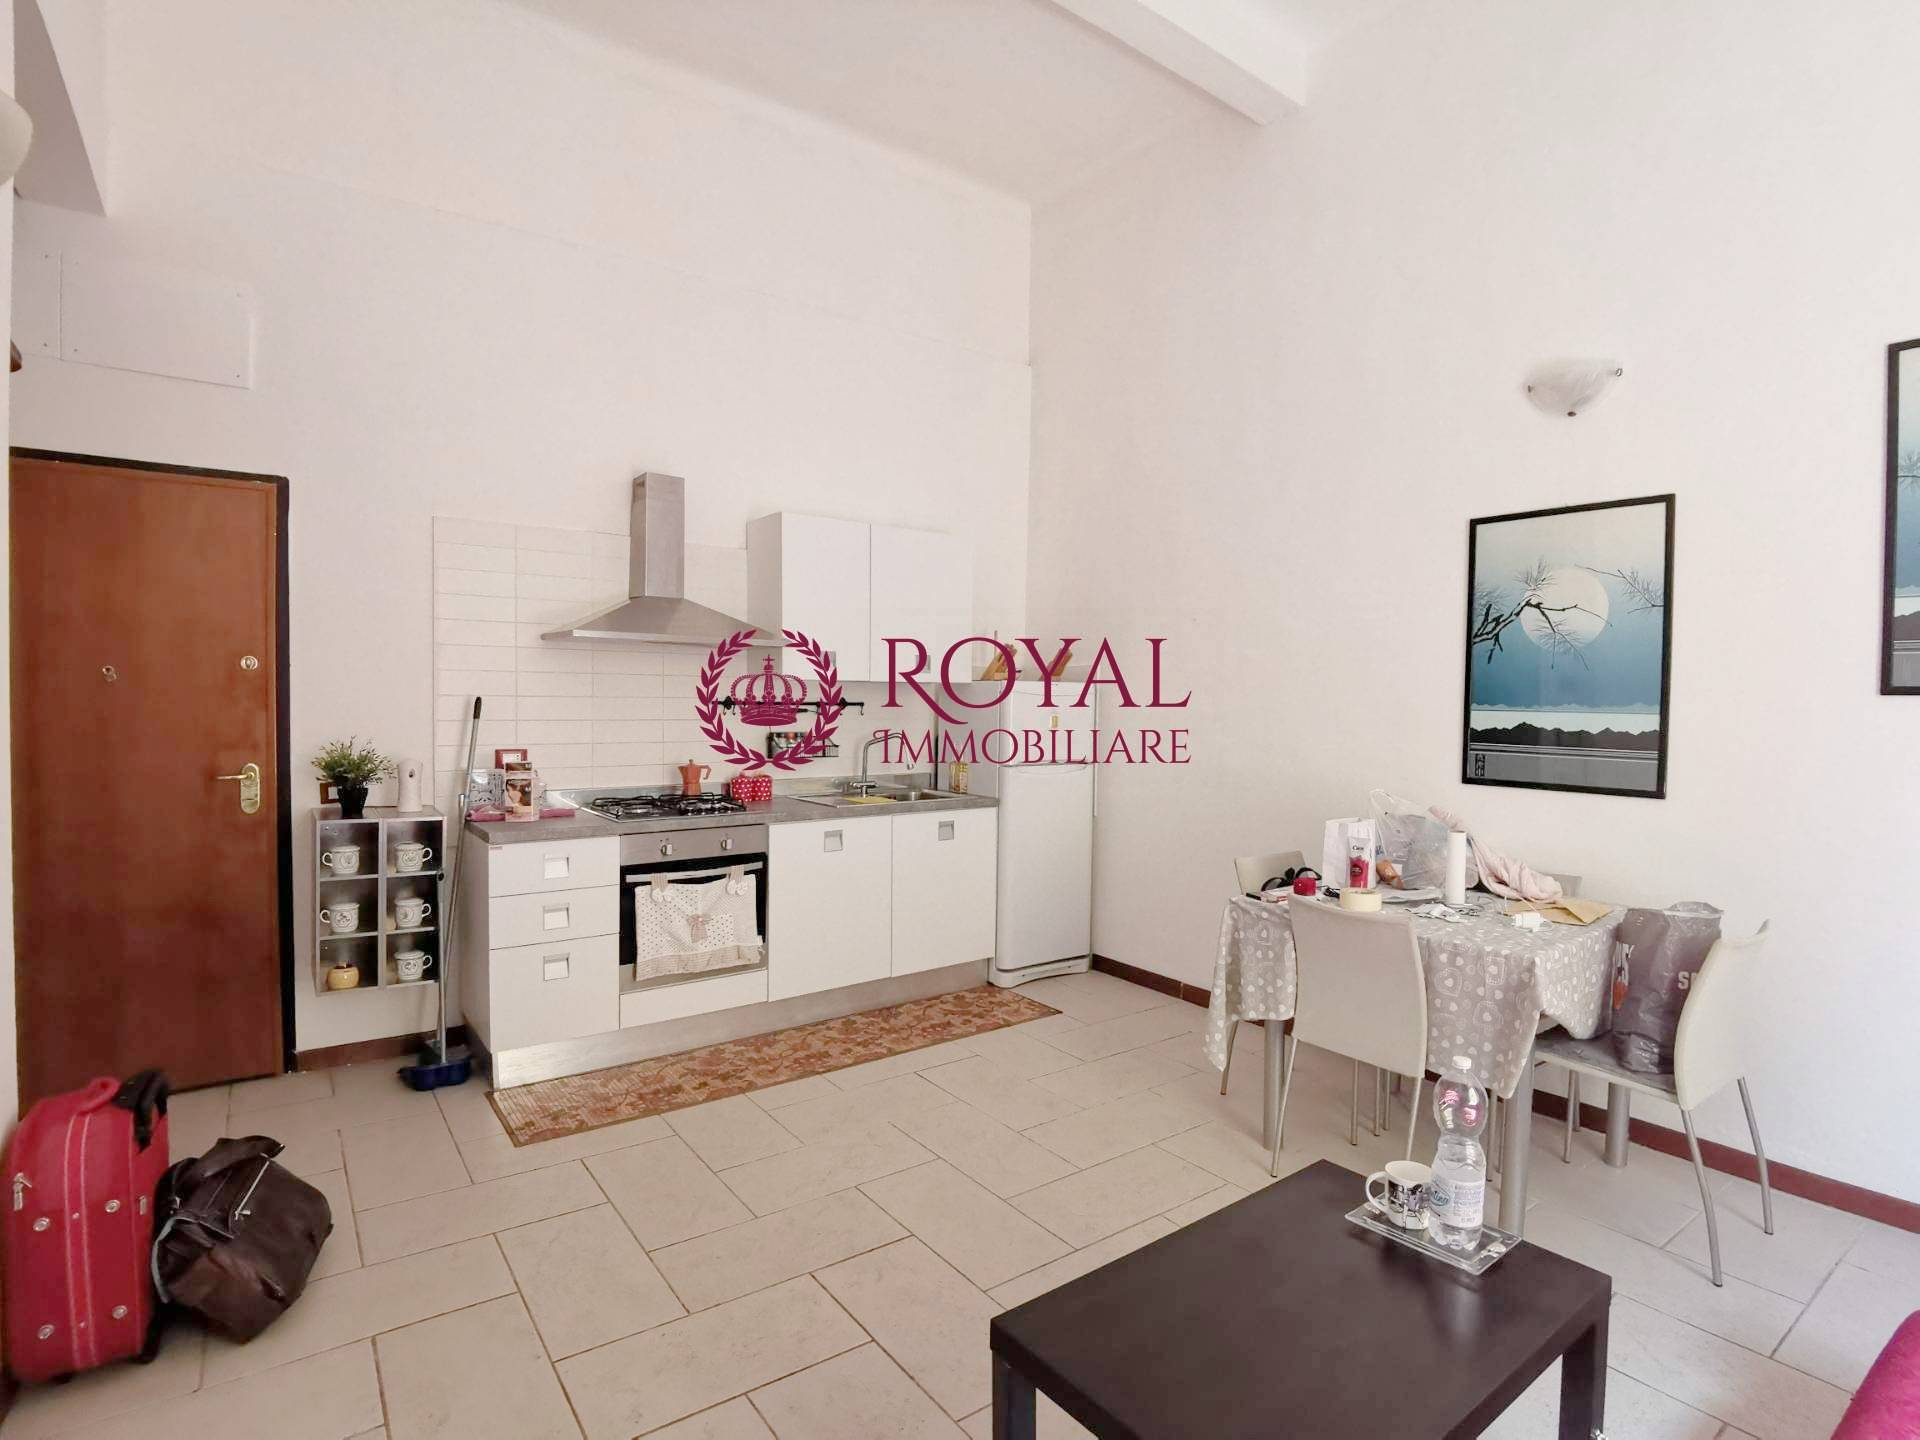 Appartamento in vendita a Livorno, 2 locali, zona ro, prezzo € 70.000 | PortaleAgenzieImmobiliari.it